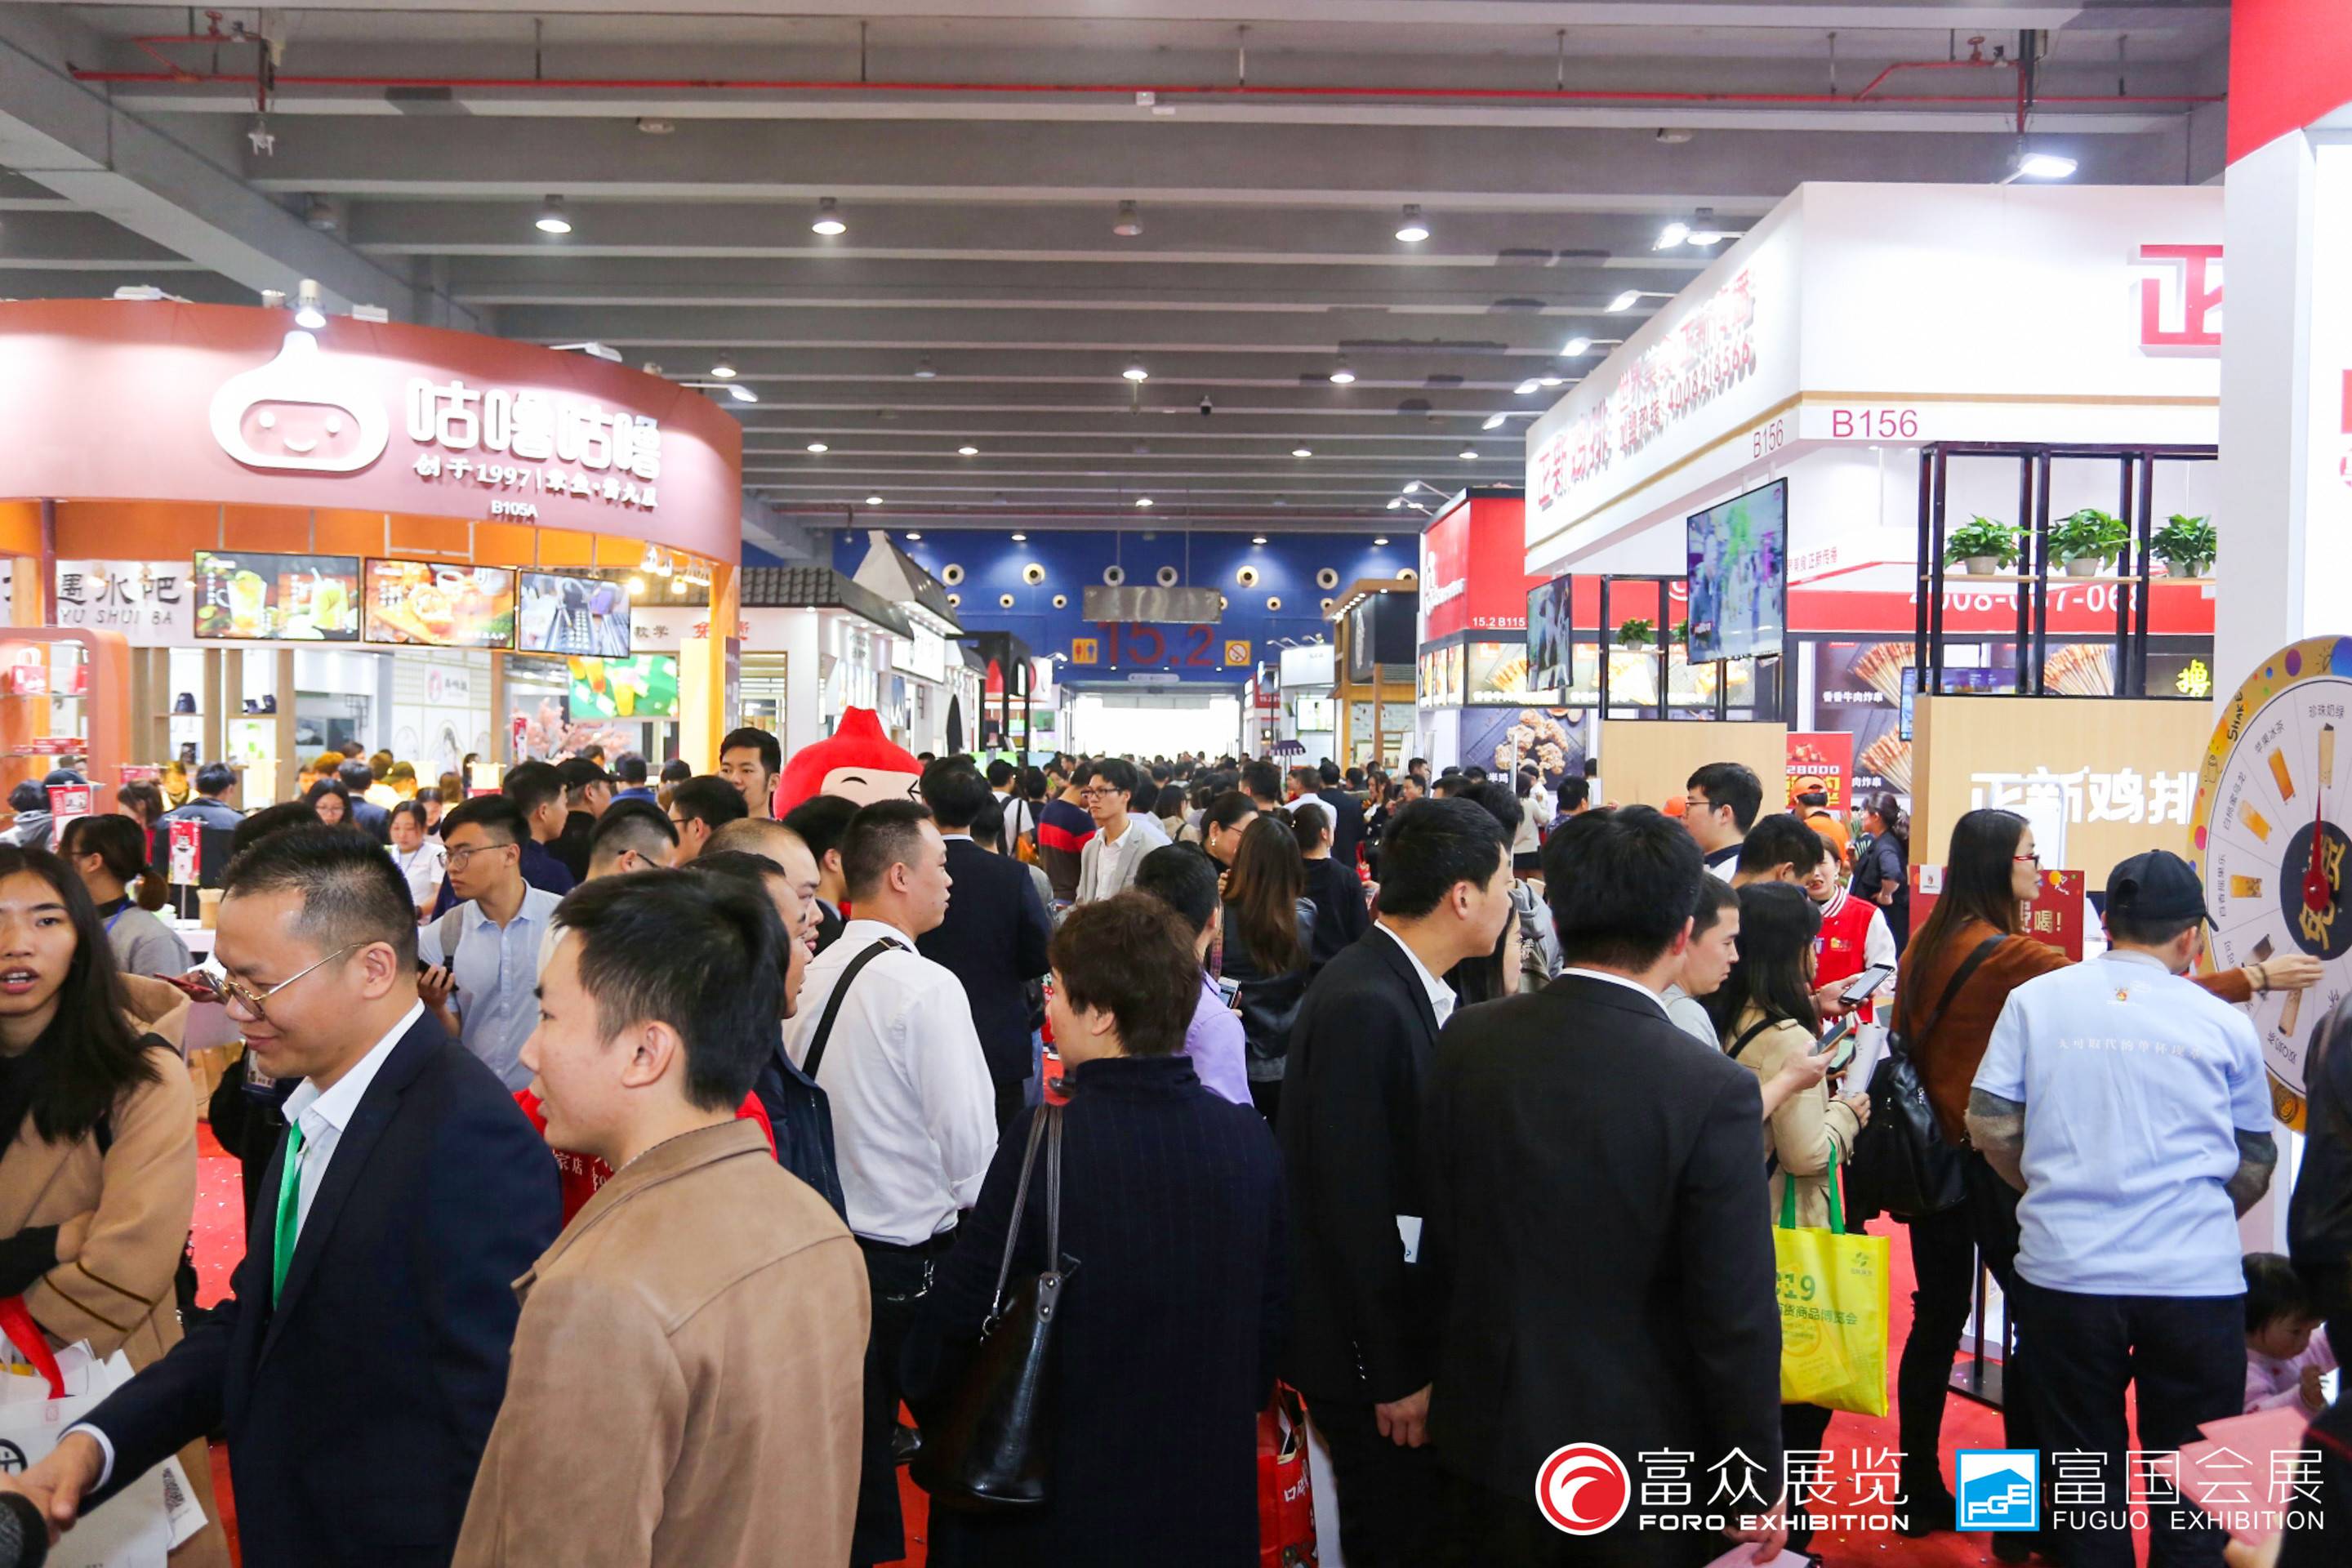 GFE2020第40届广州特许连锁加盟展览会